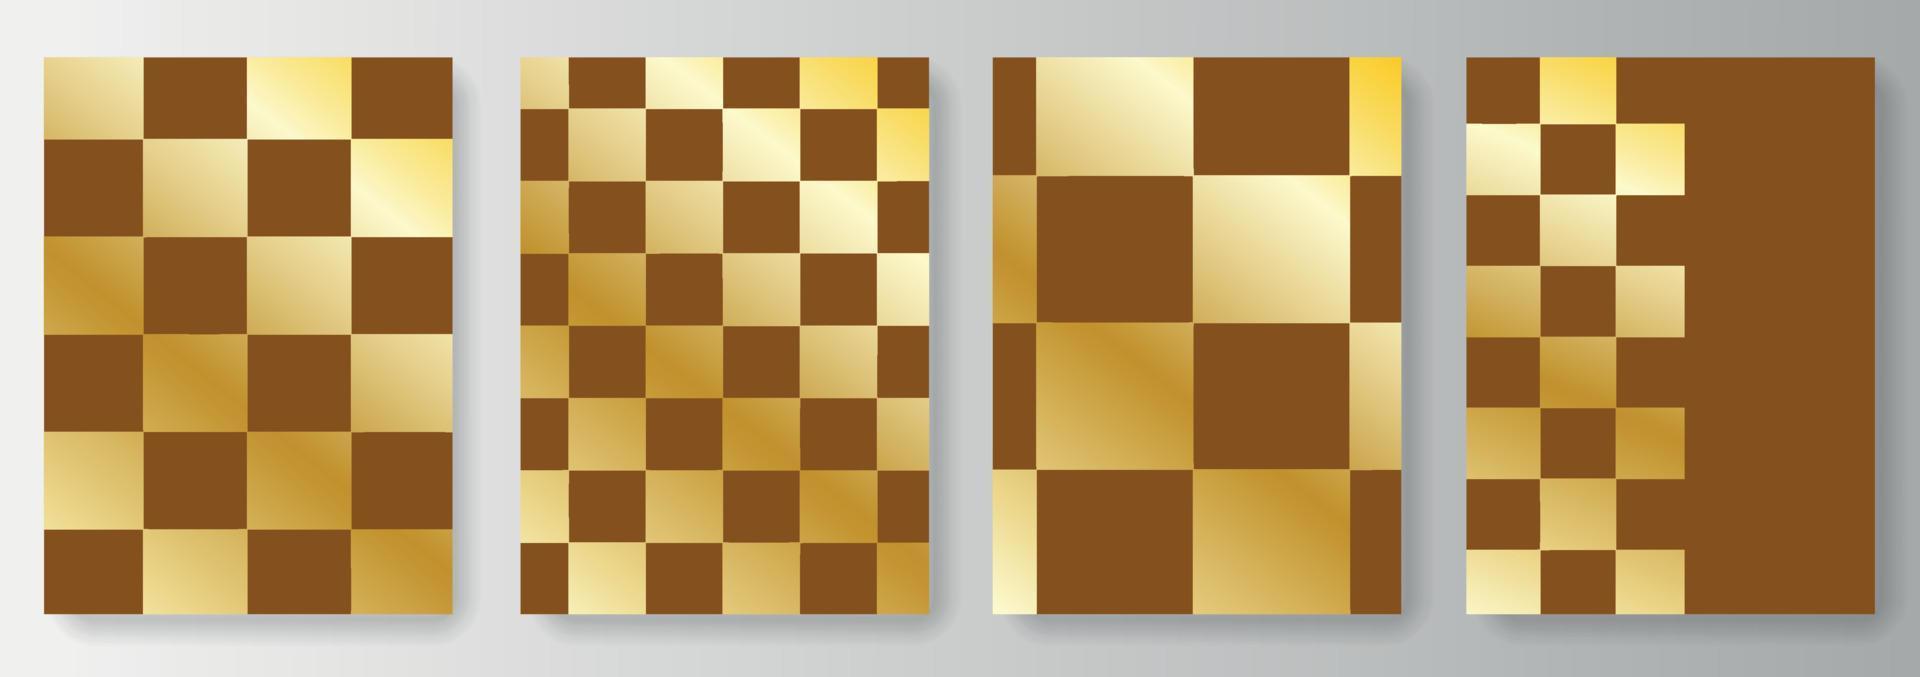 définir la collection de fonds bruns avec des carrés dorés. échiquier vecteur